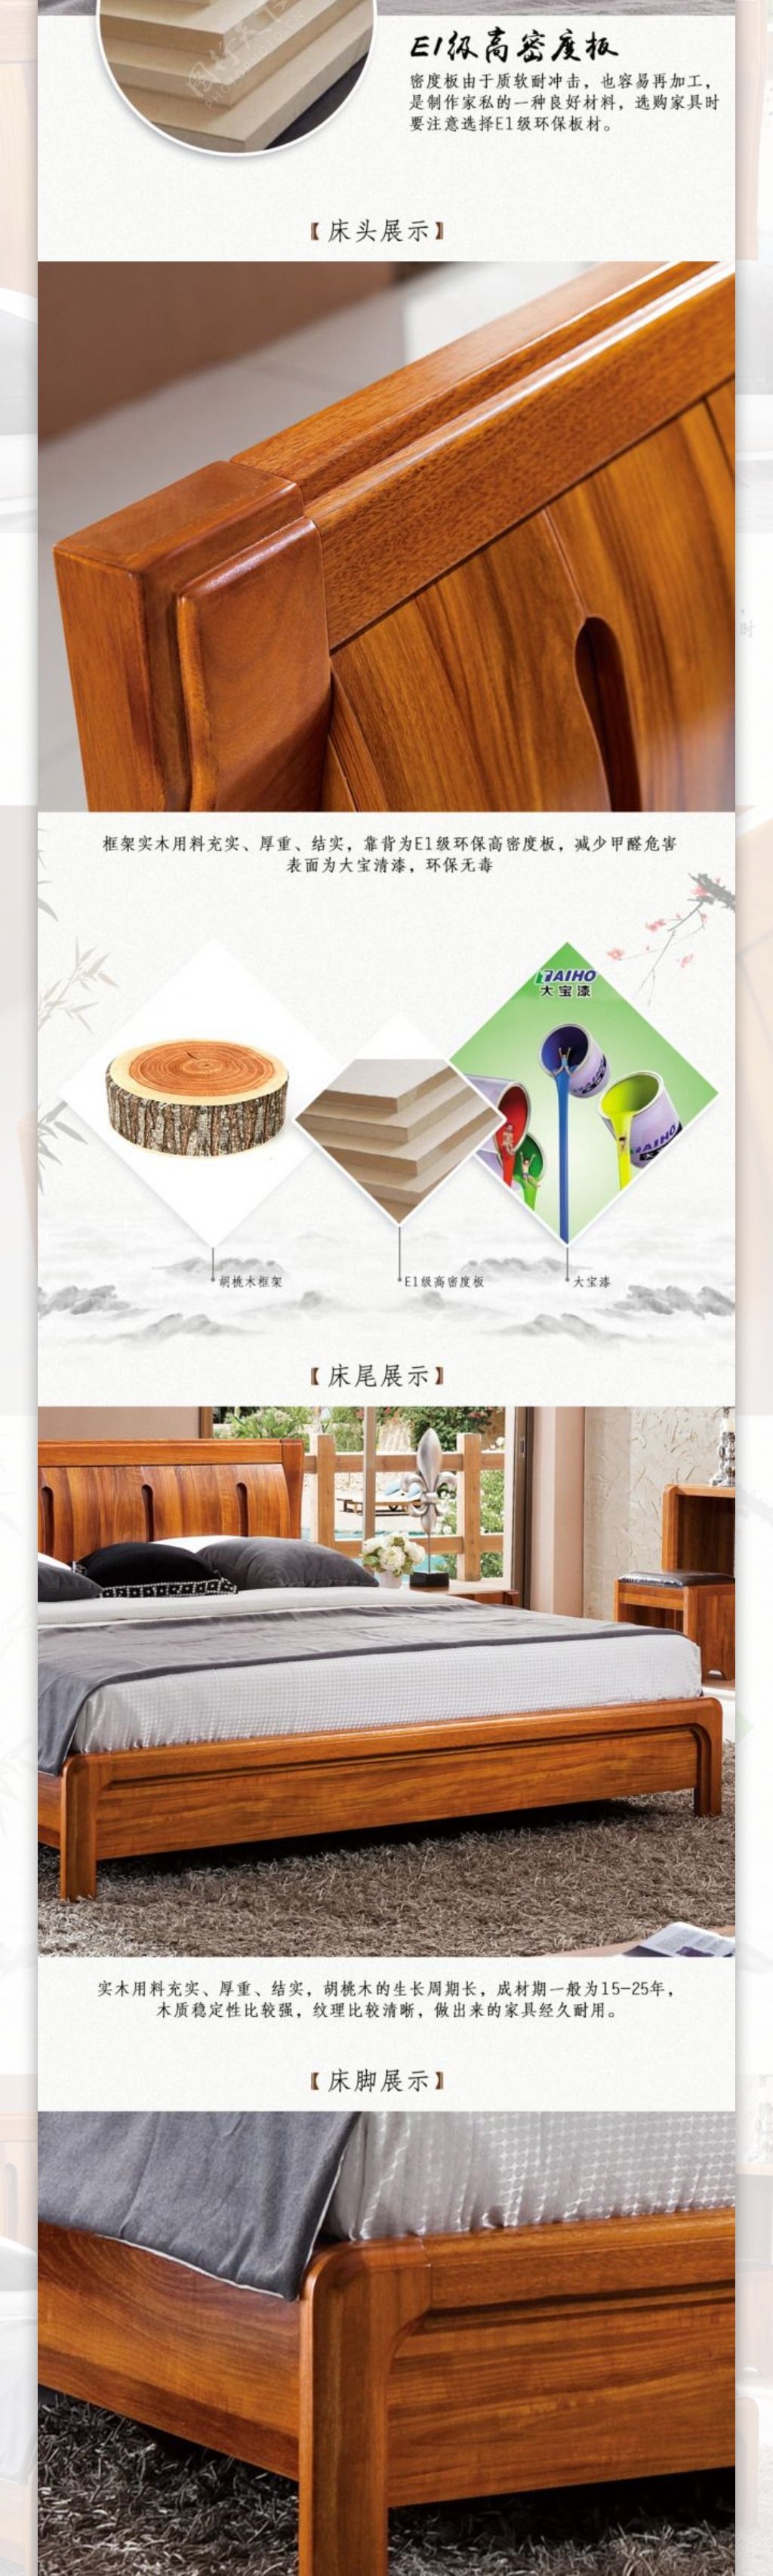 中式实木床家具中国风天猫淘宝详情页模板